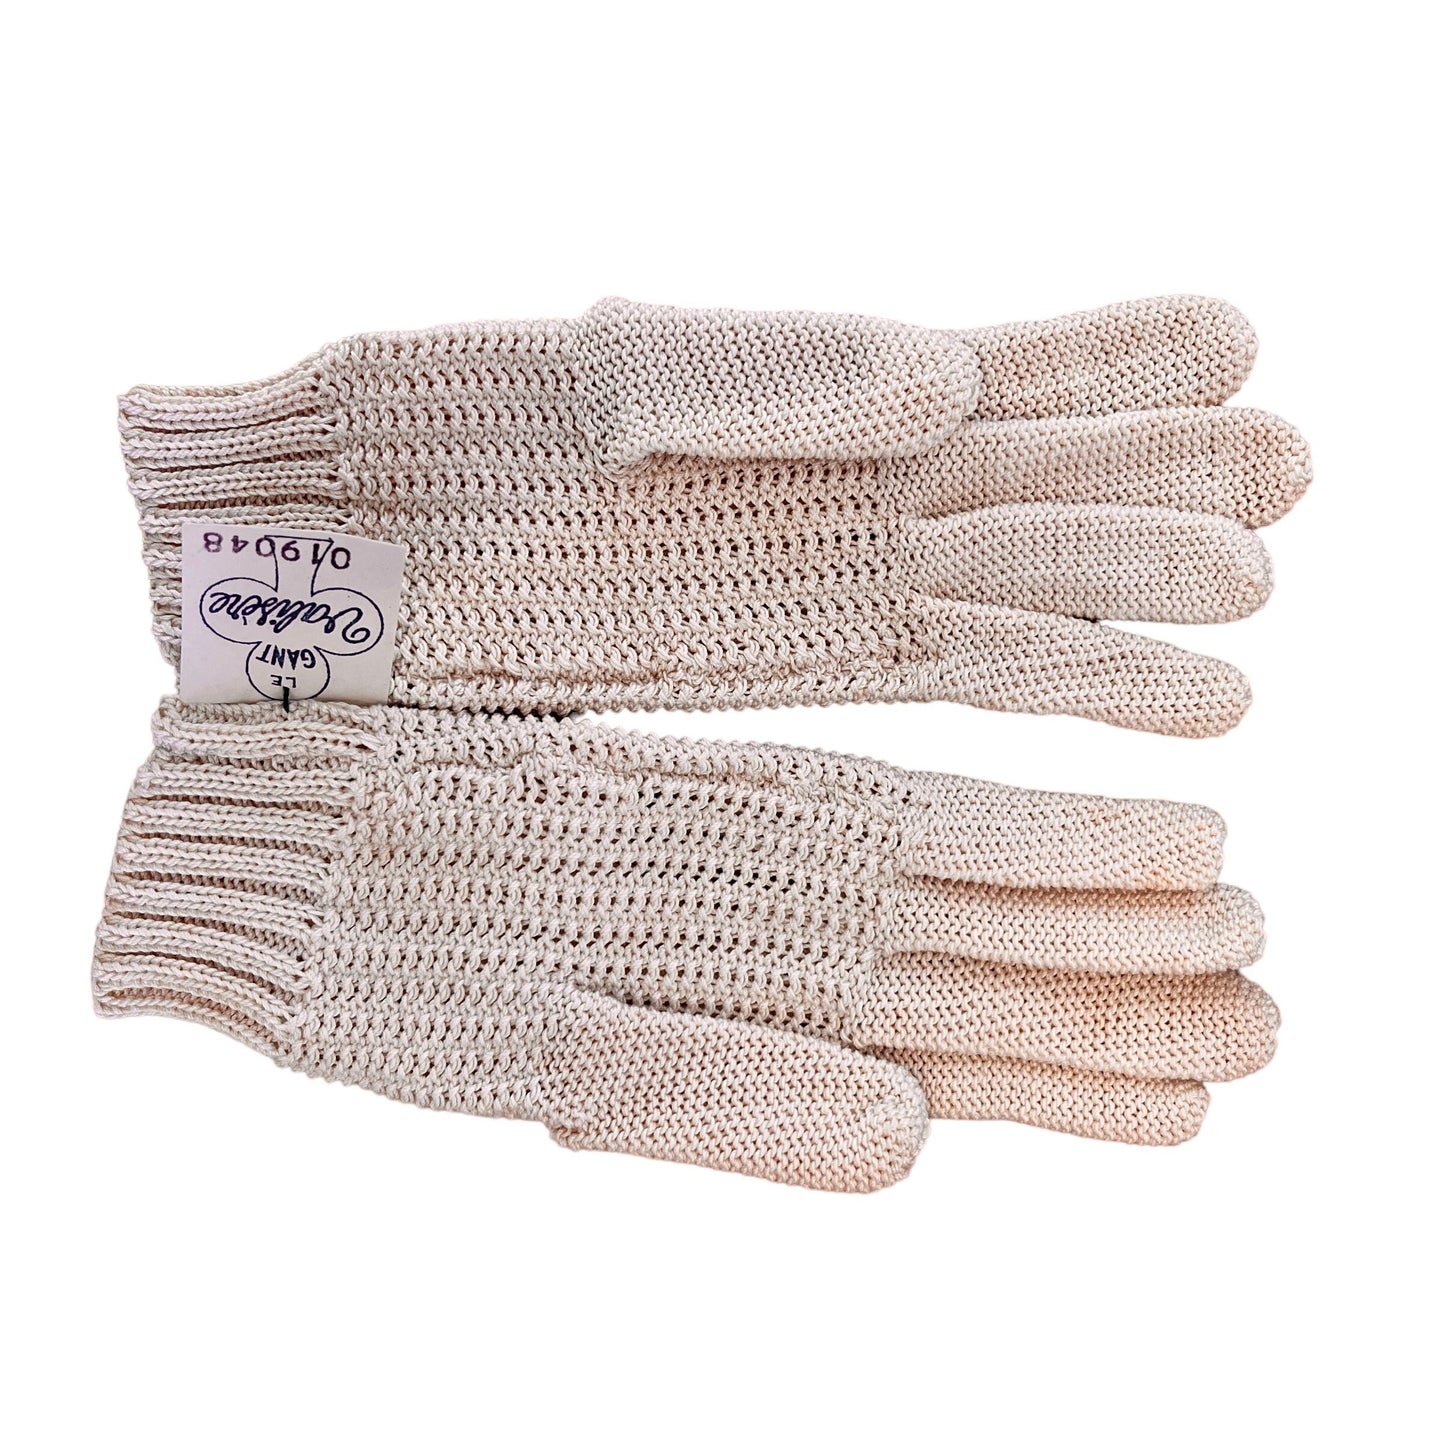 Vintage Beige 60s Crocheted Gloves 3-5Y